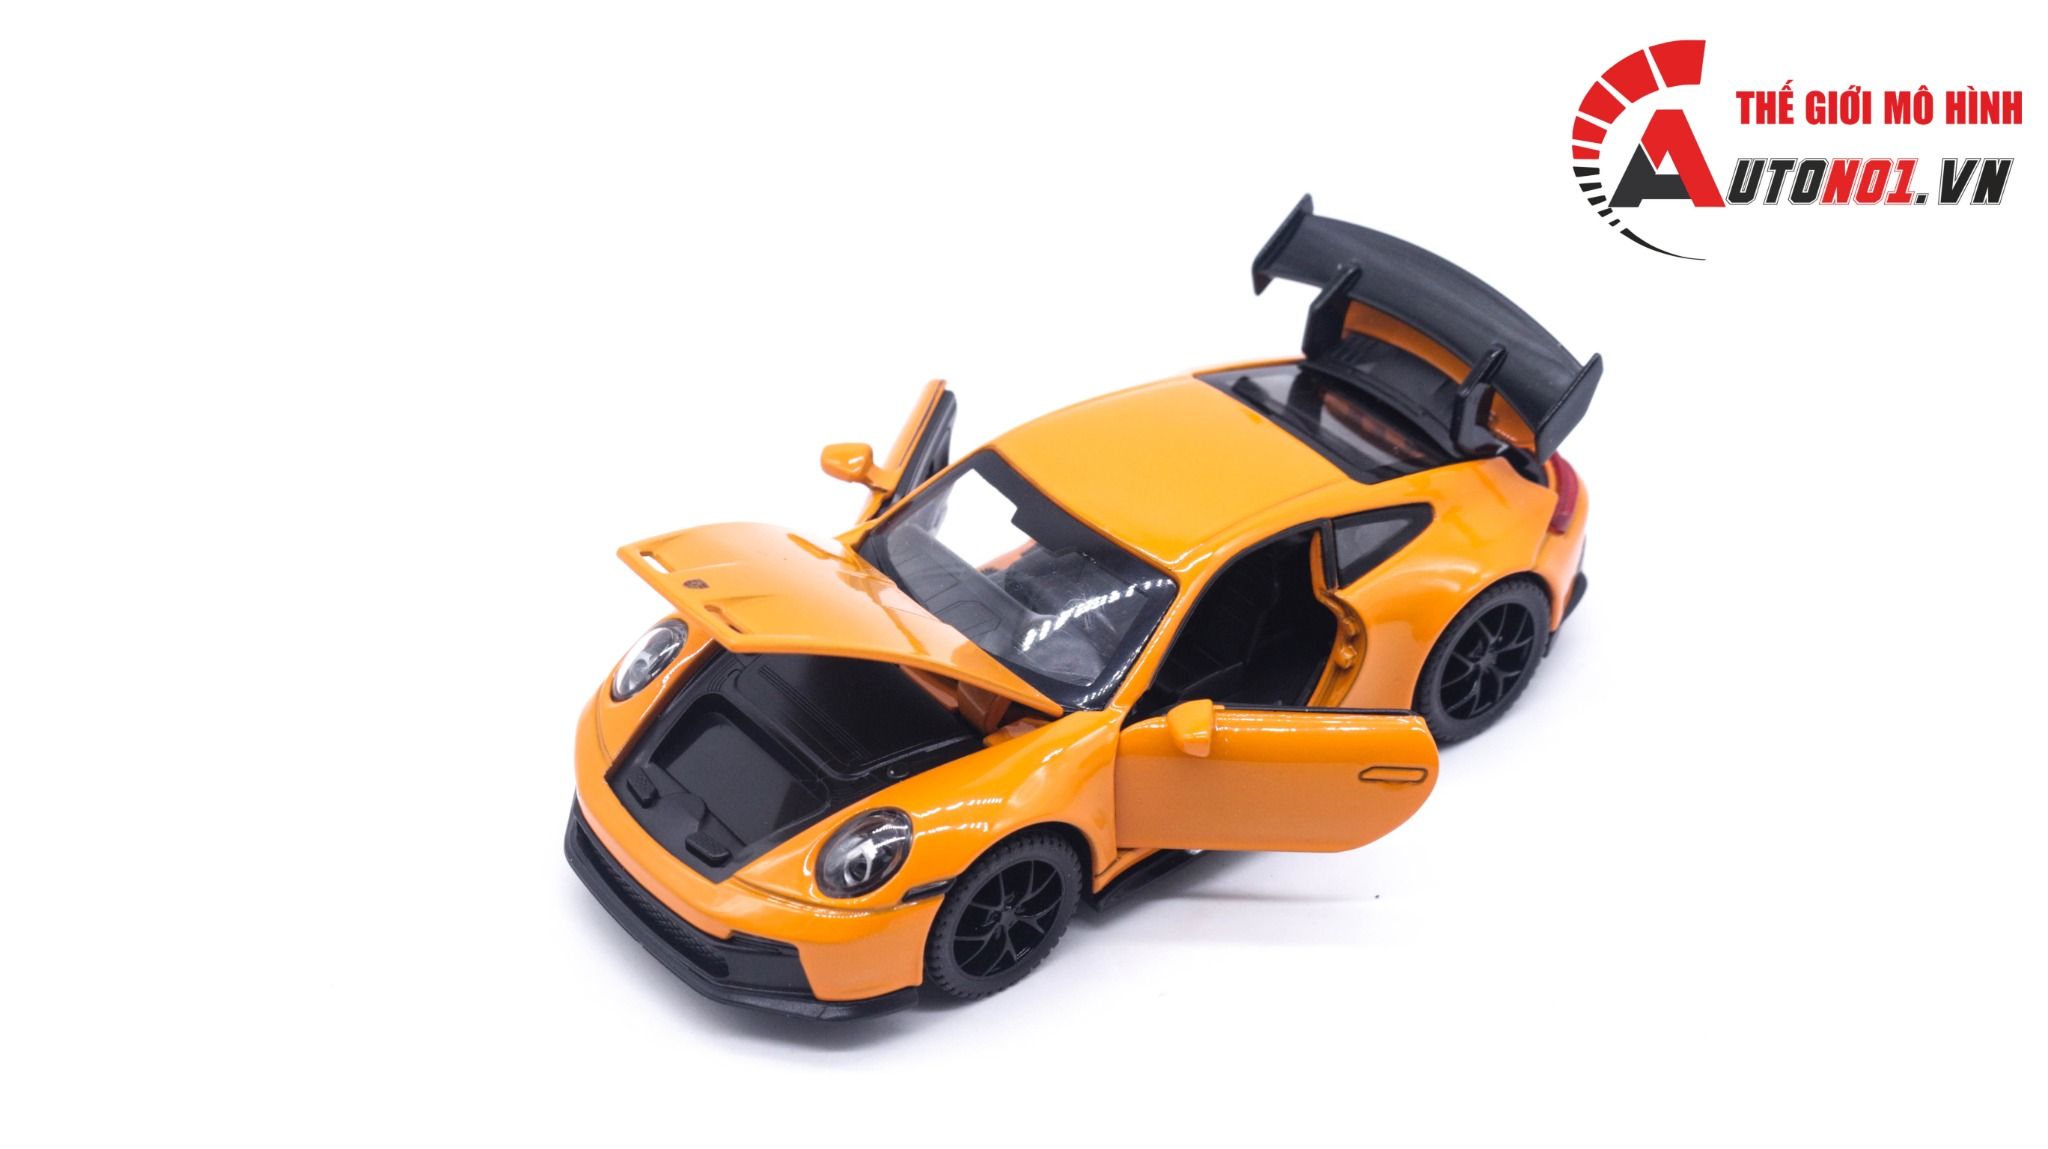  Mô hình xe ô tô Porsche 911 GT3 tỉ lệ 1:32 Alloy Model OT139 